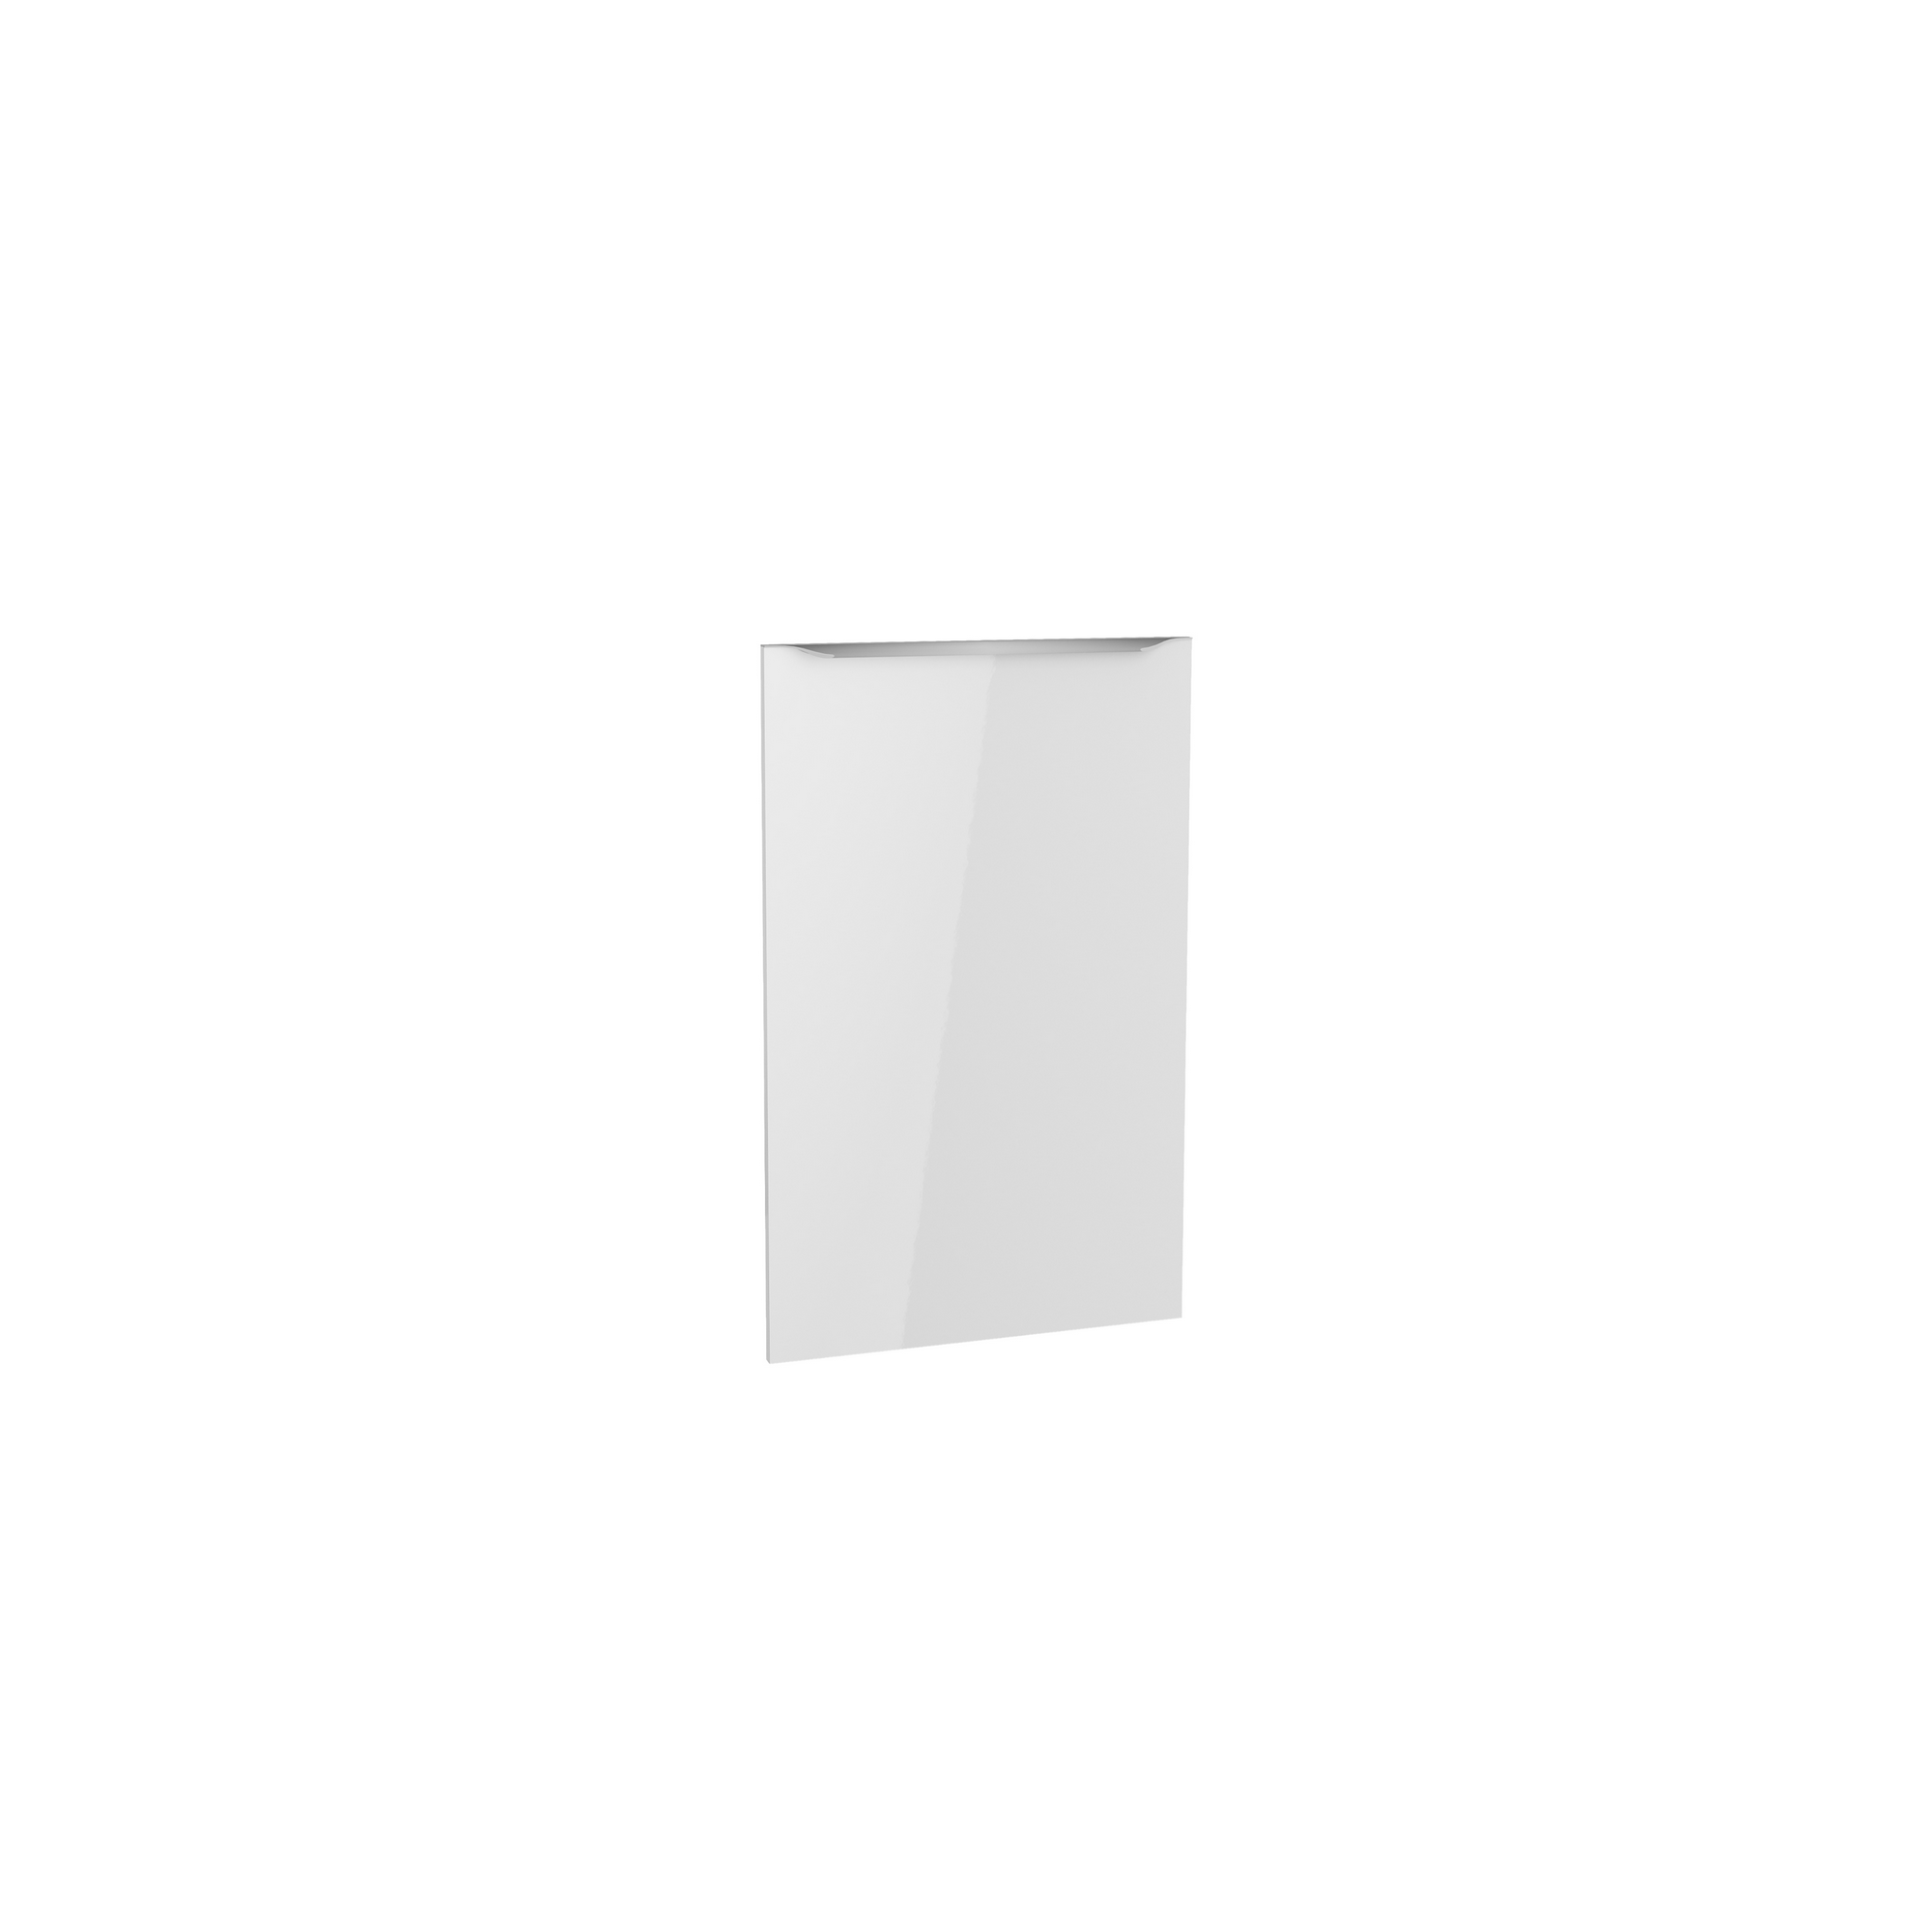 Tür für vollintegrierten Geschirrspüler 'Optikomfort Arvid986' weiß 44,6 x 70 x 1,6 cm + product picture